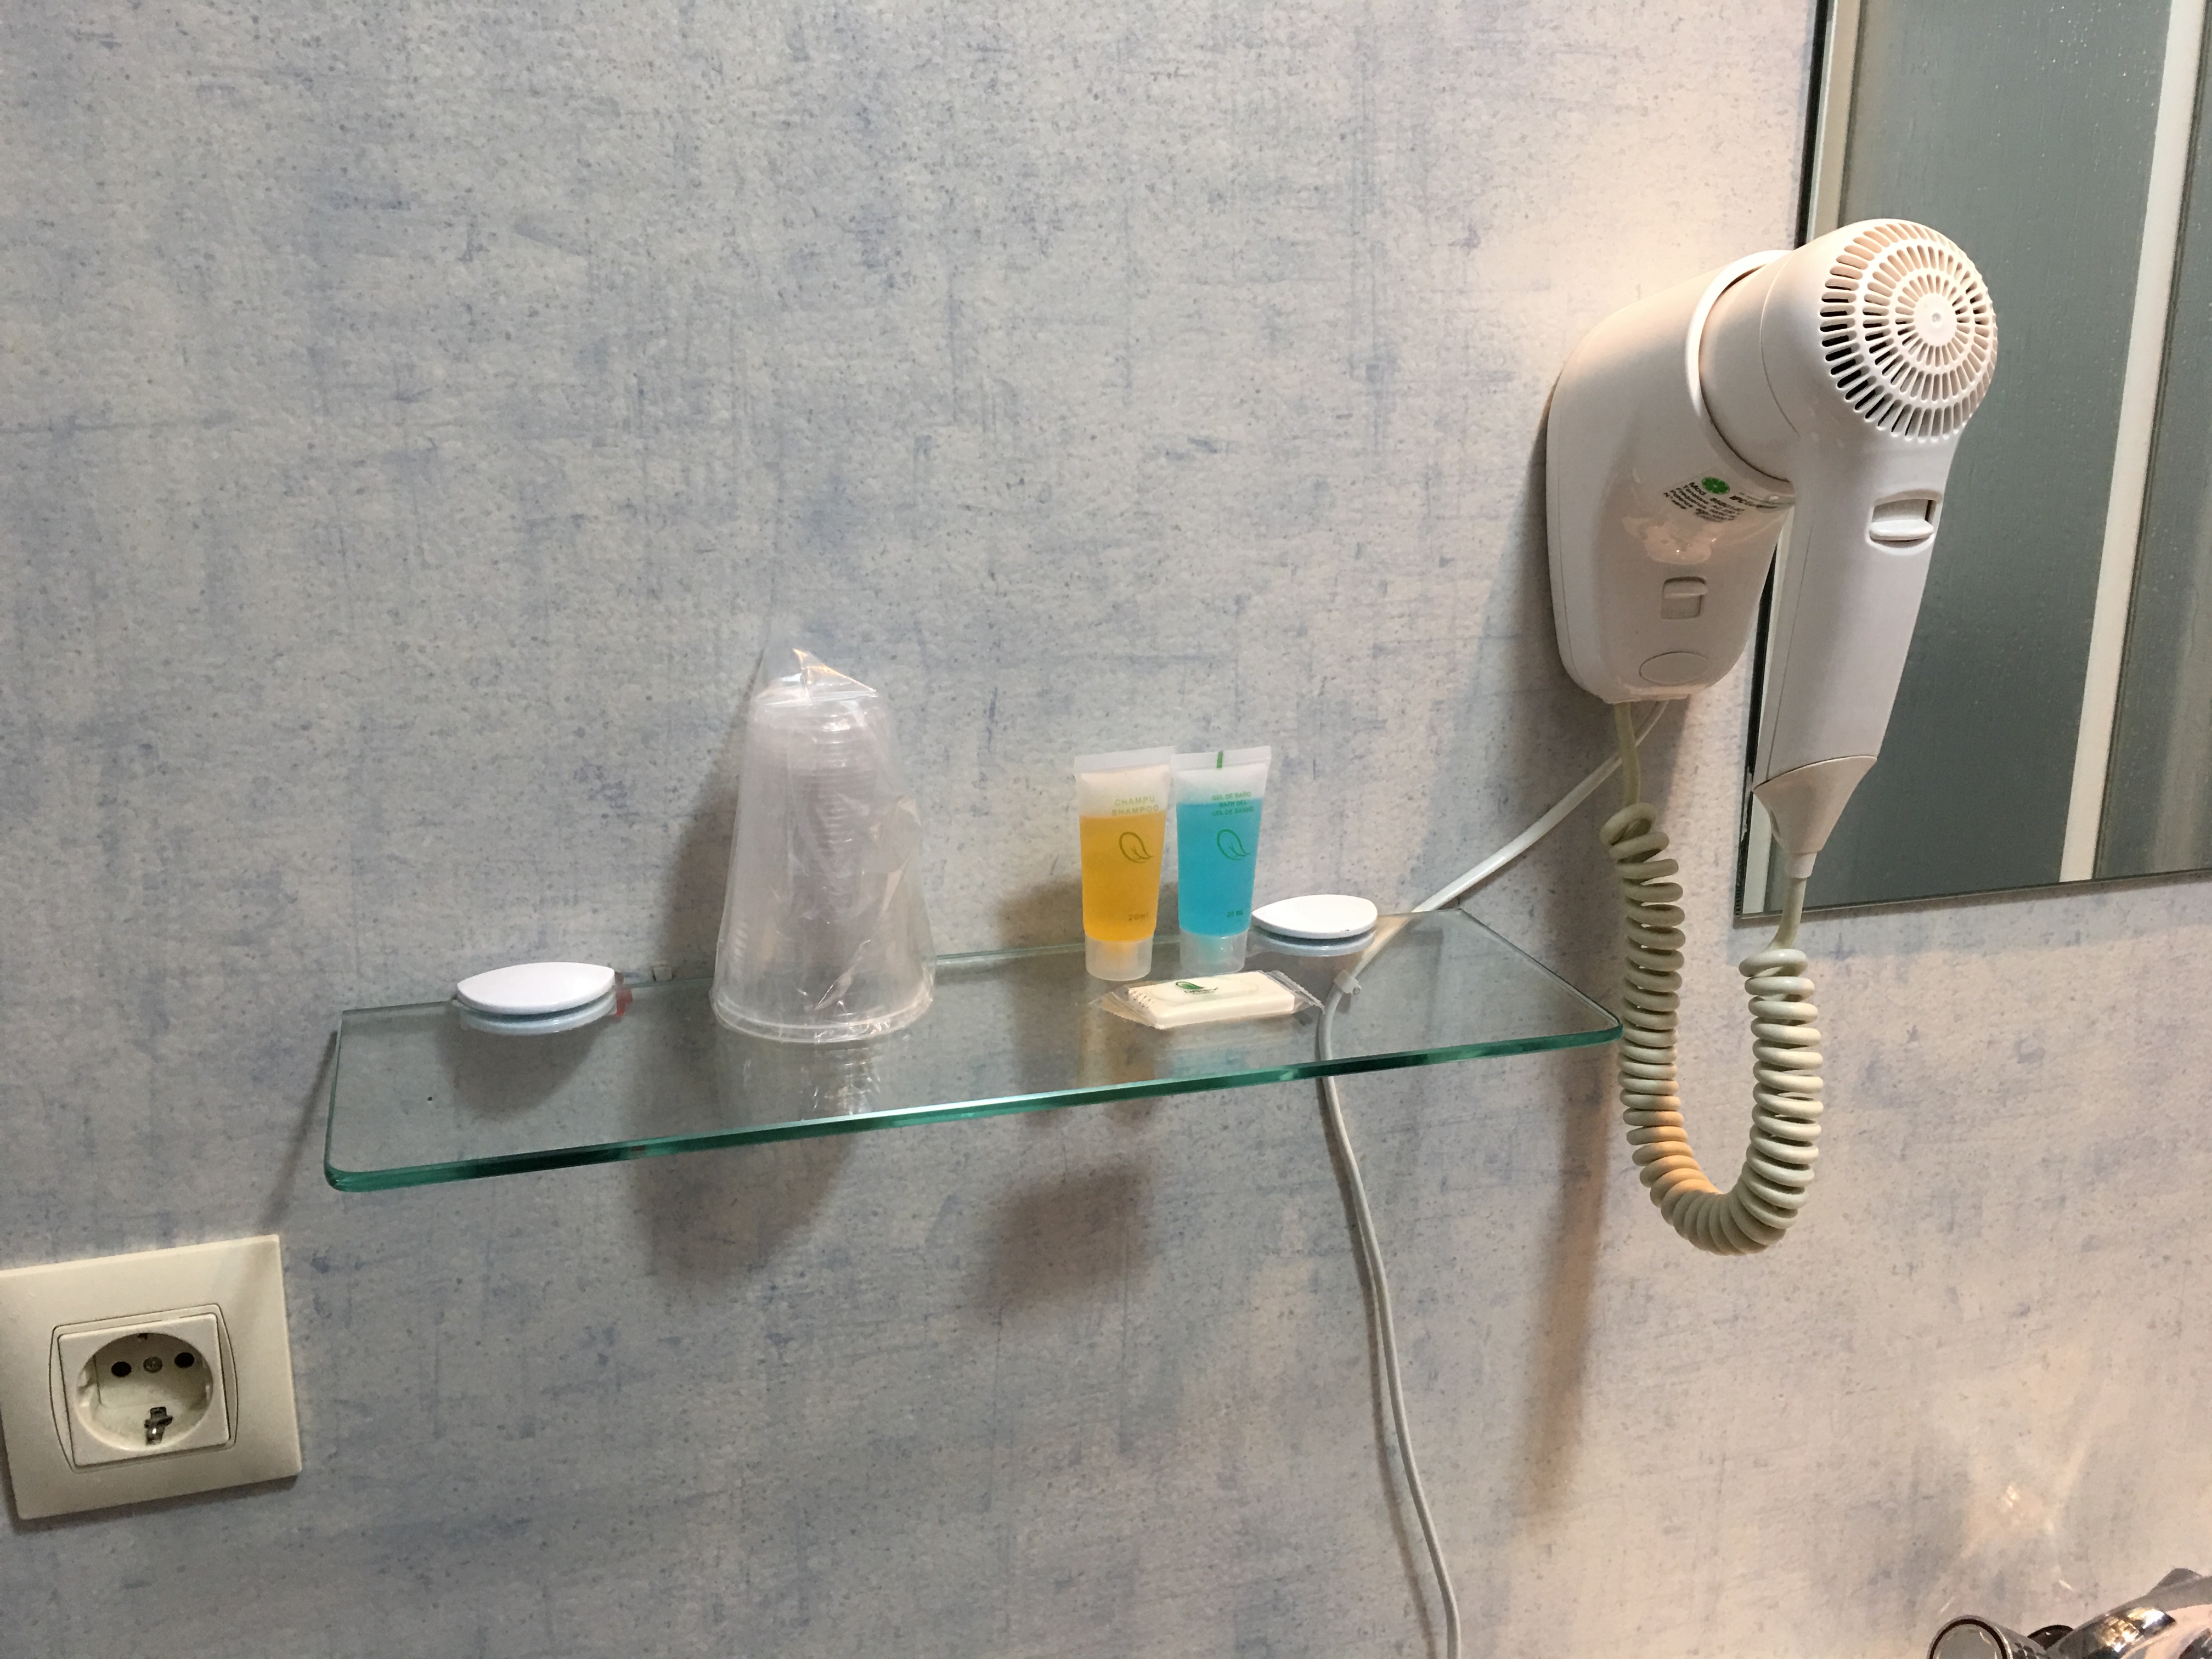 Ablage im Bad mit Zahnputzbechern, Shampoo und Seife. Daneben hängt ein Fön